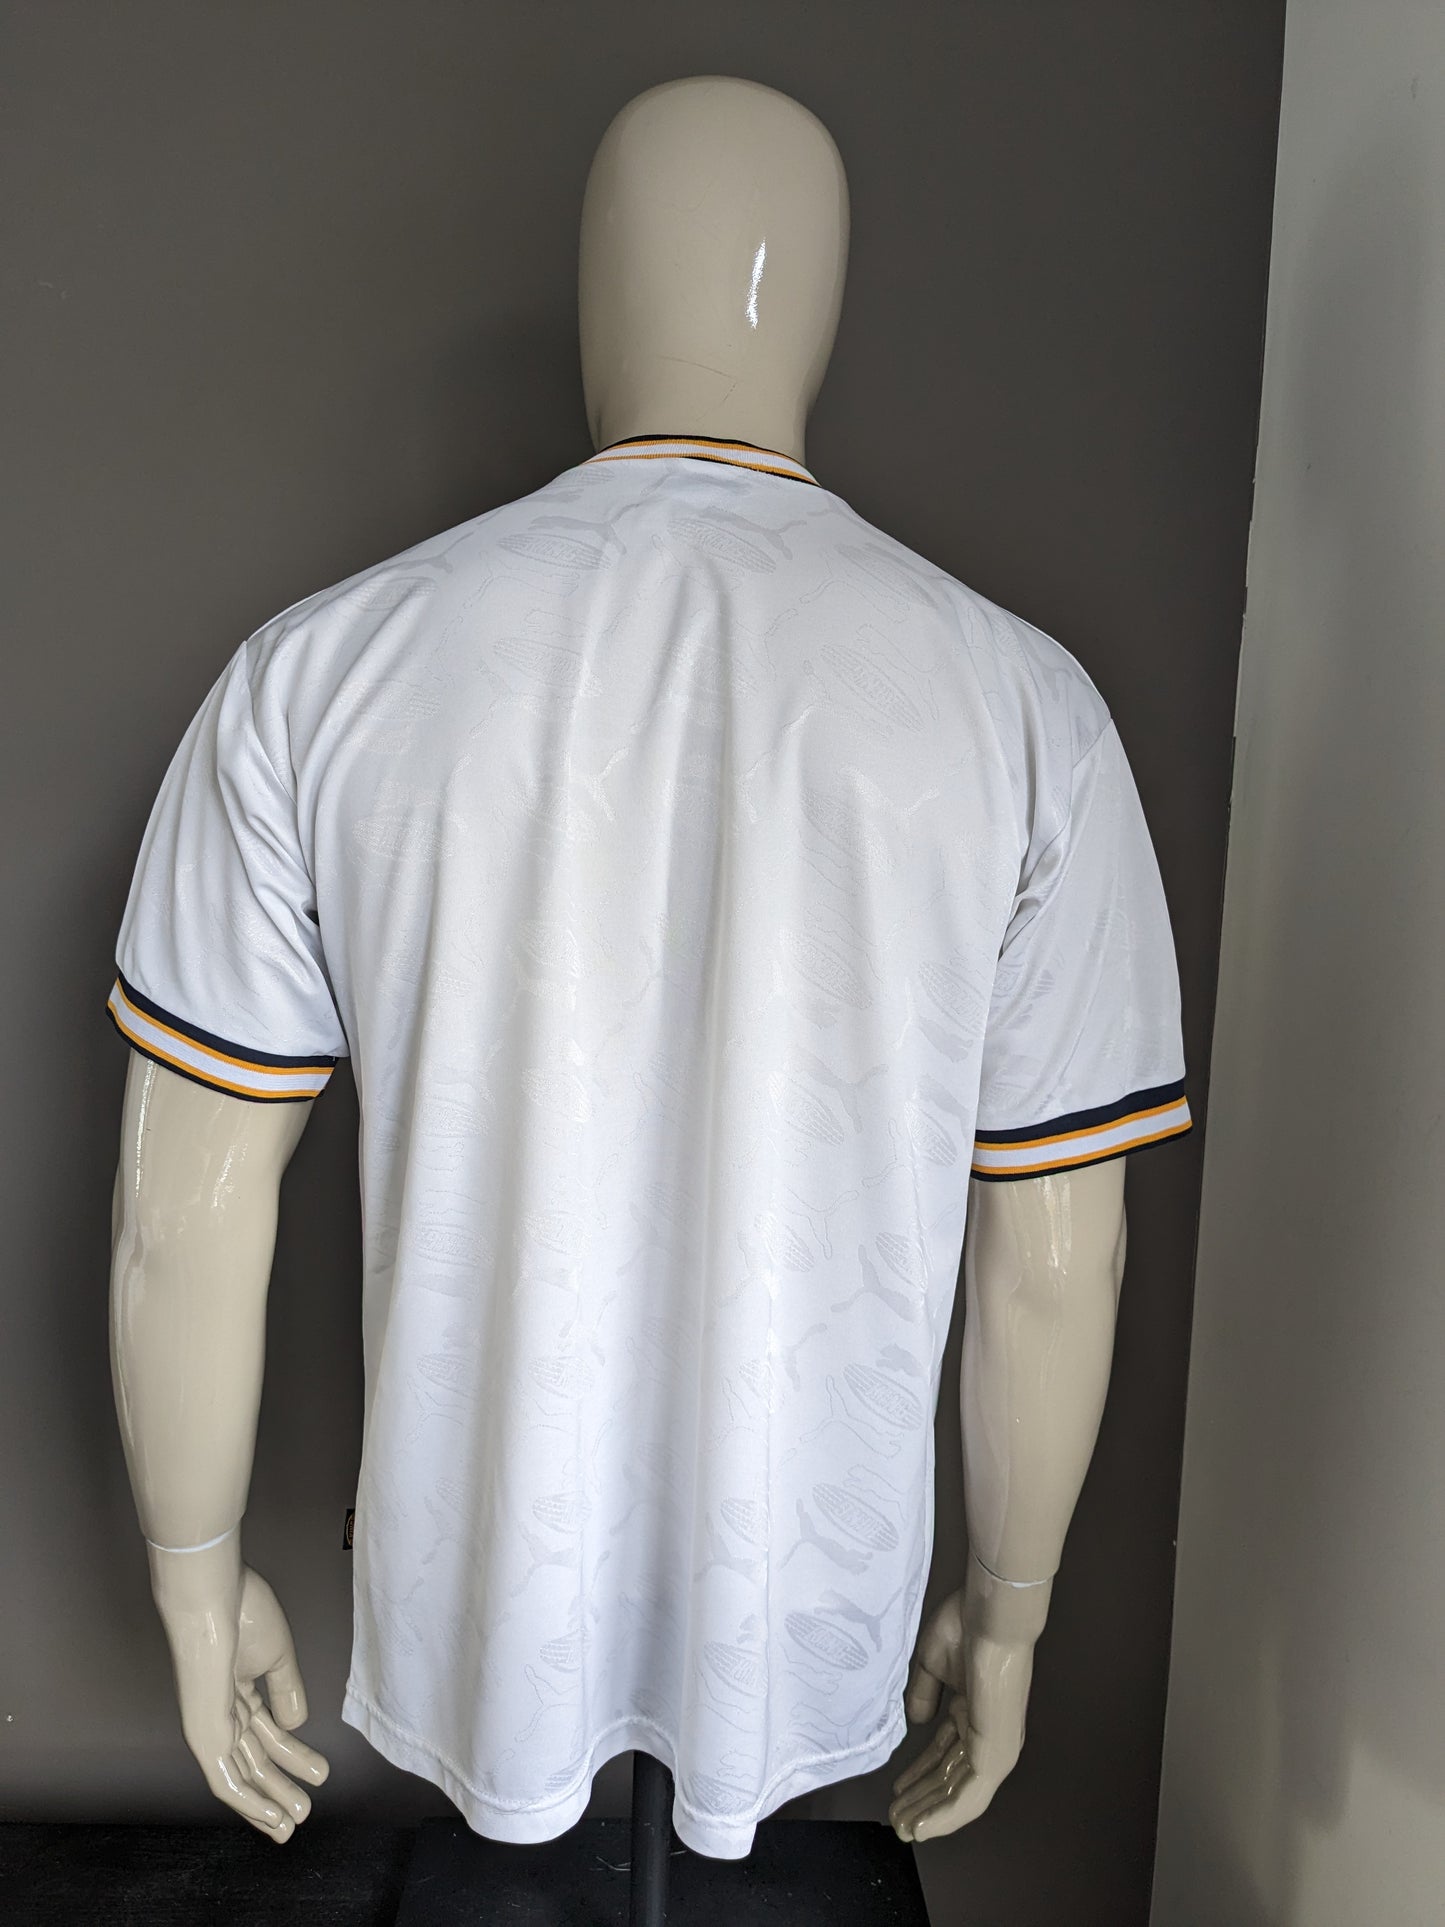 Camicia puma sportiva vintage. Bianco blu giallo con stampa. Taglia L.